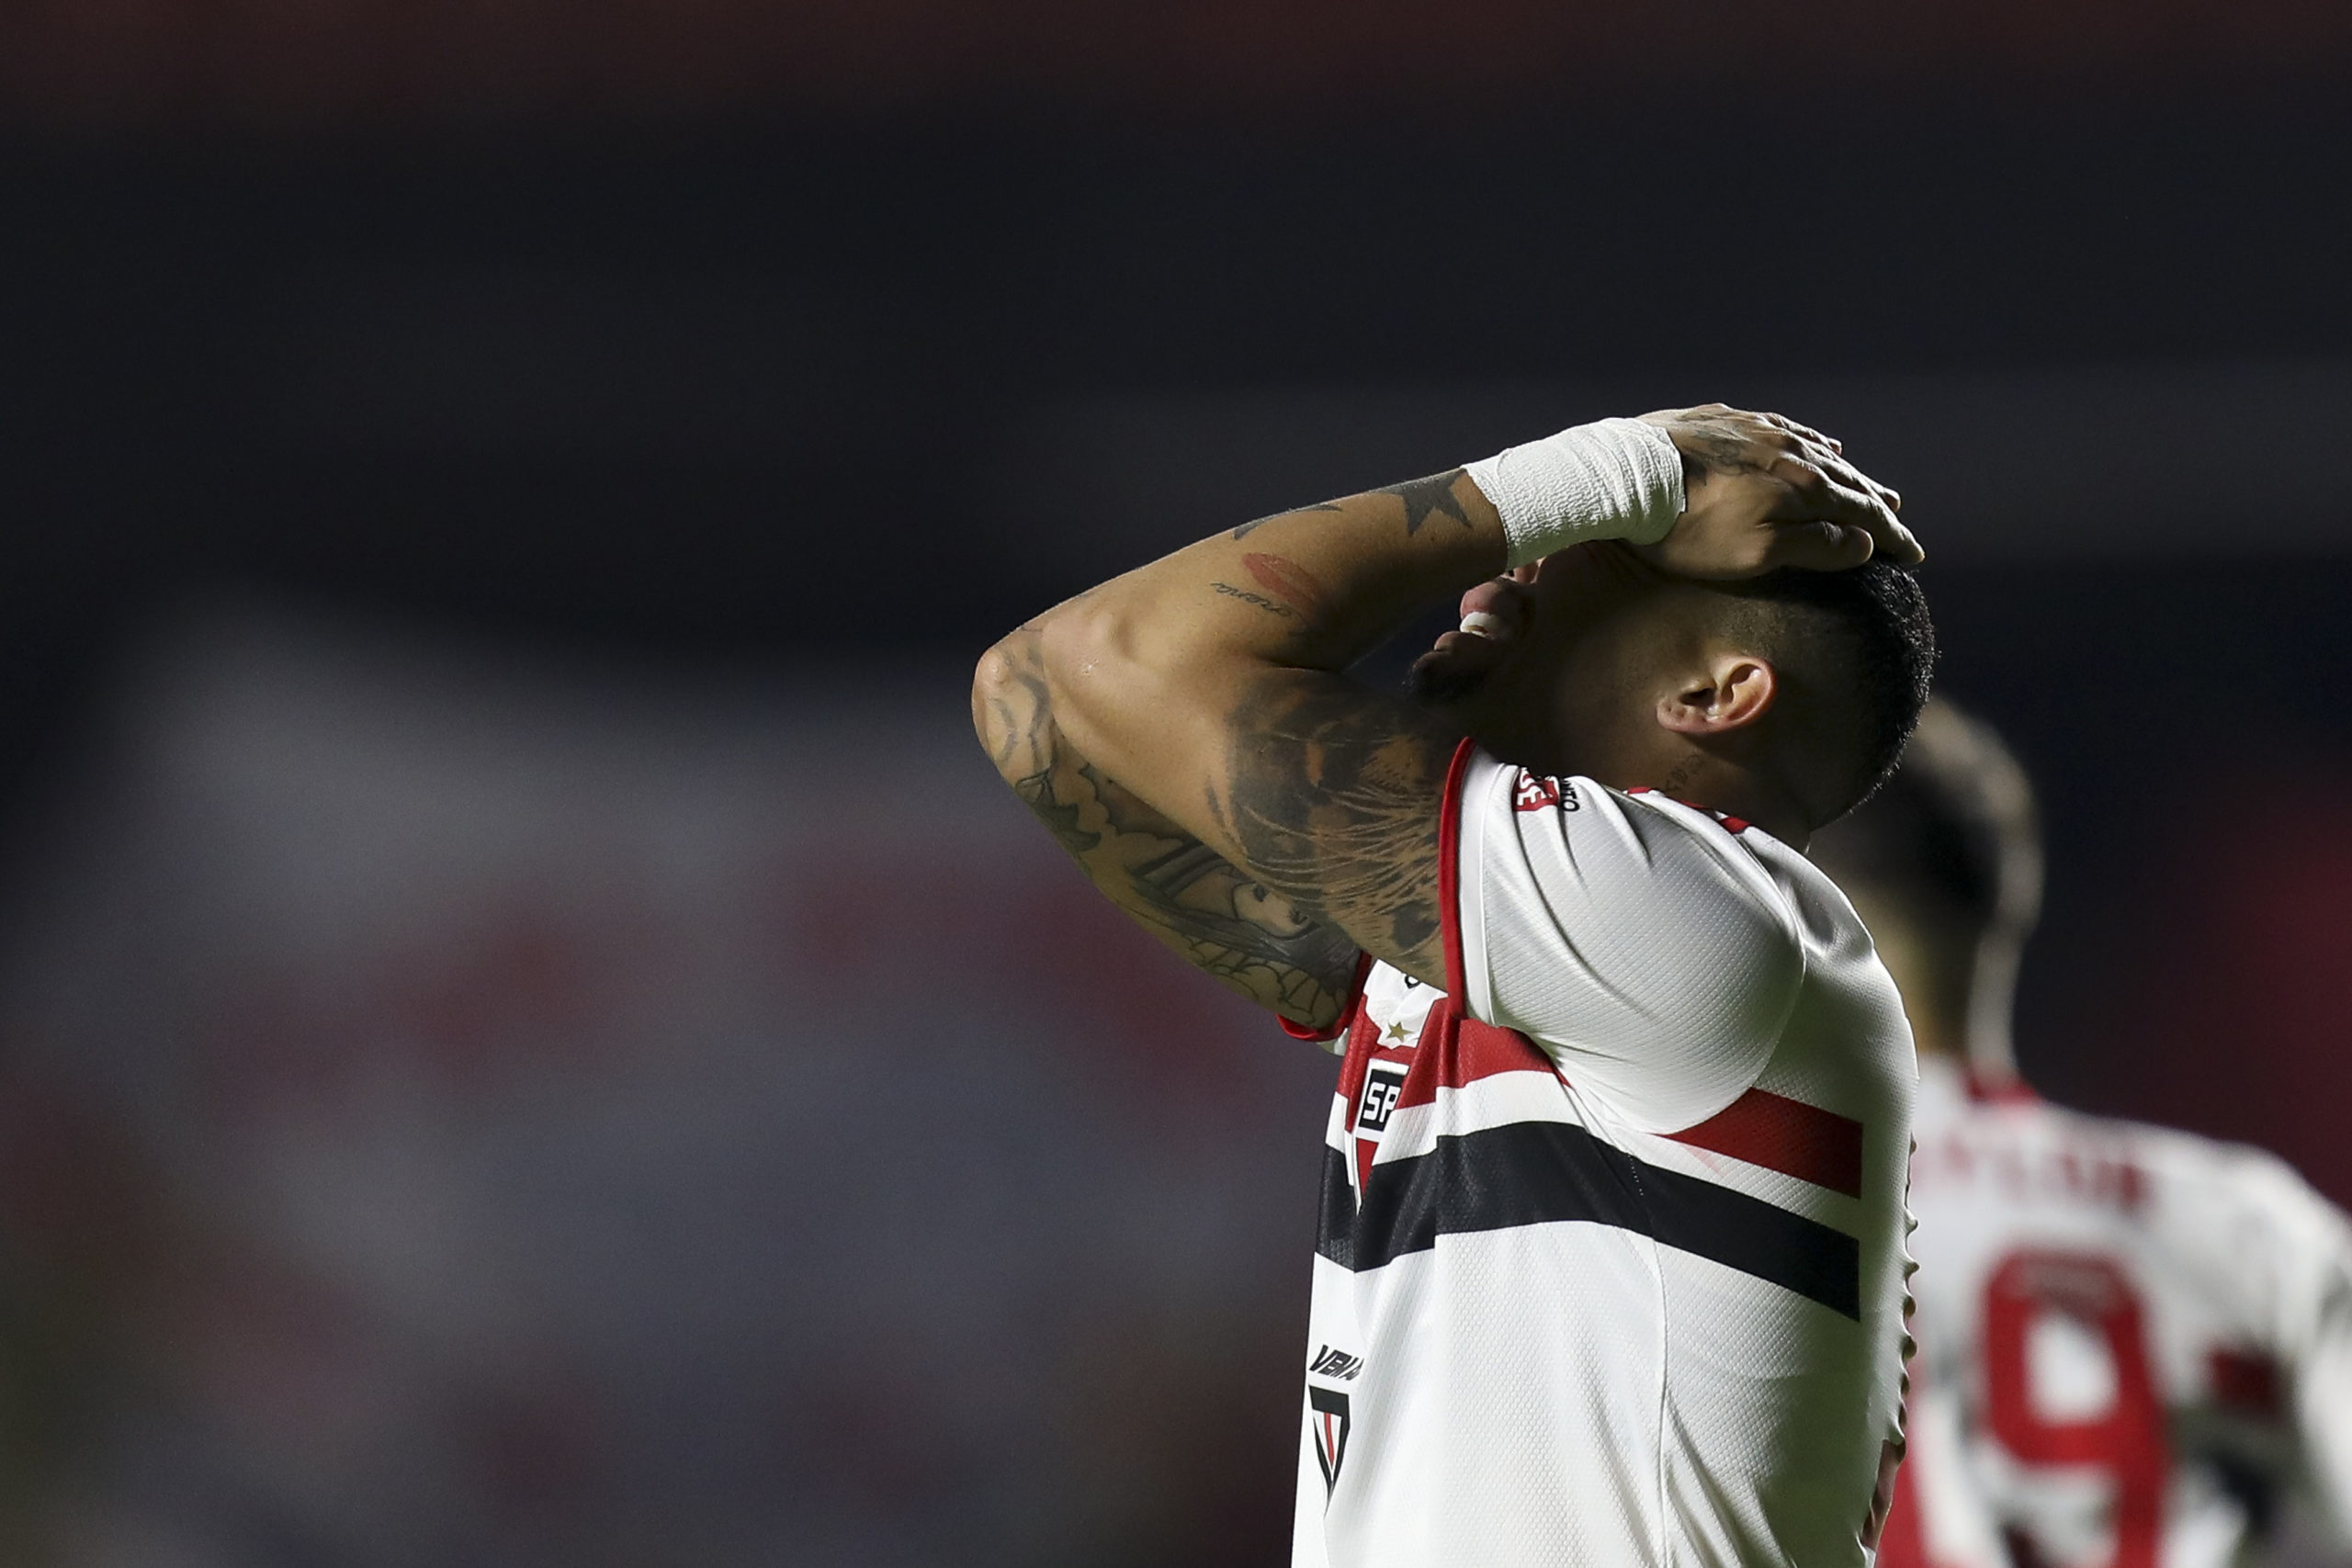 São Paulo chega a segunda sequência na temporada de três jogos sem vitórias